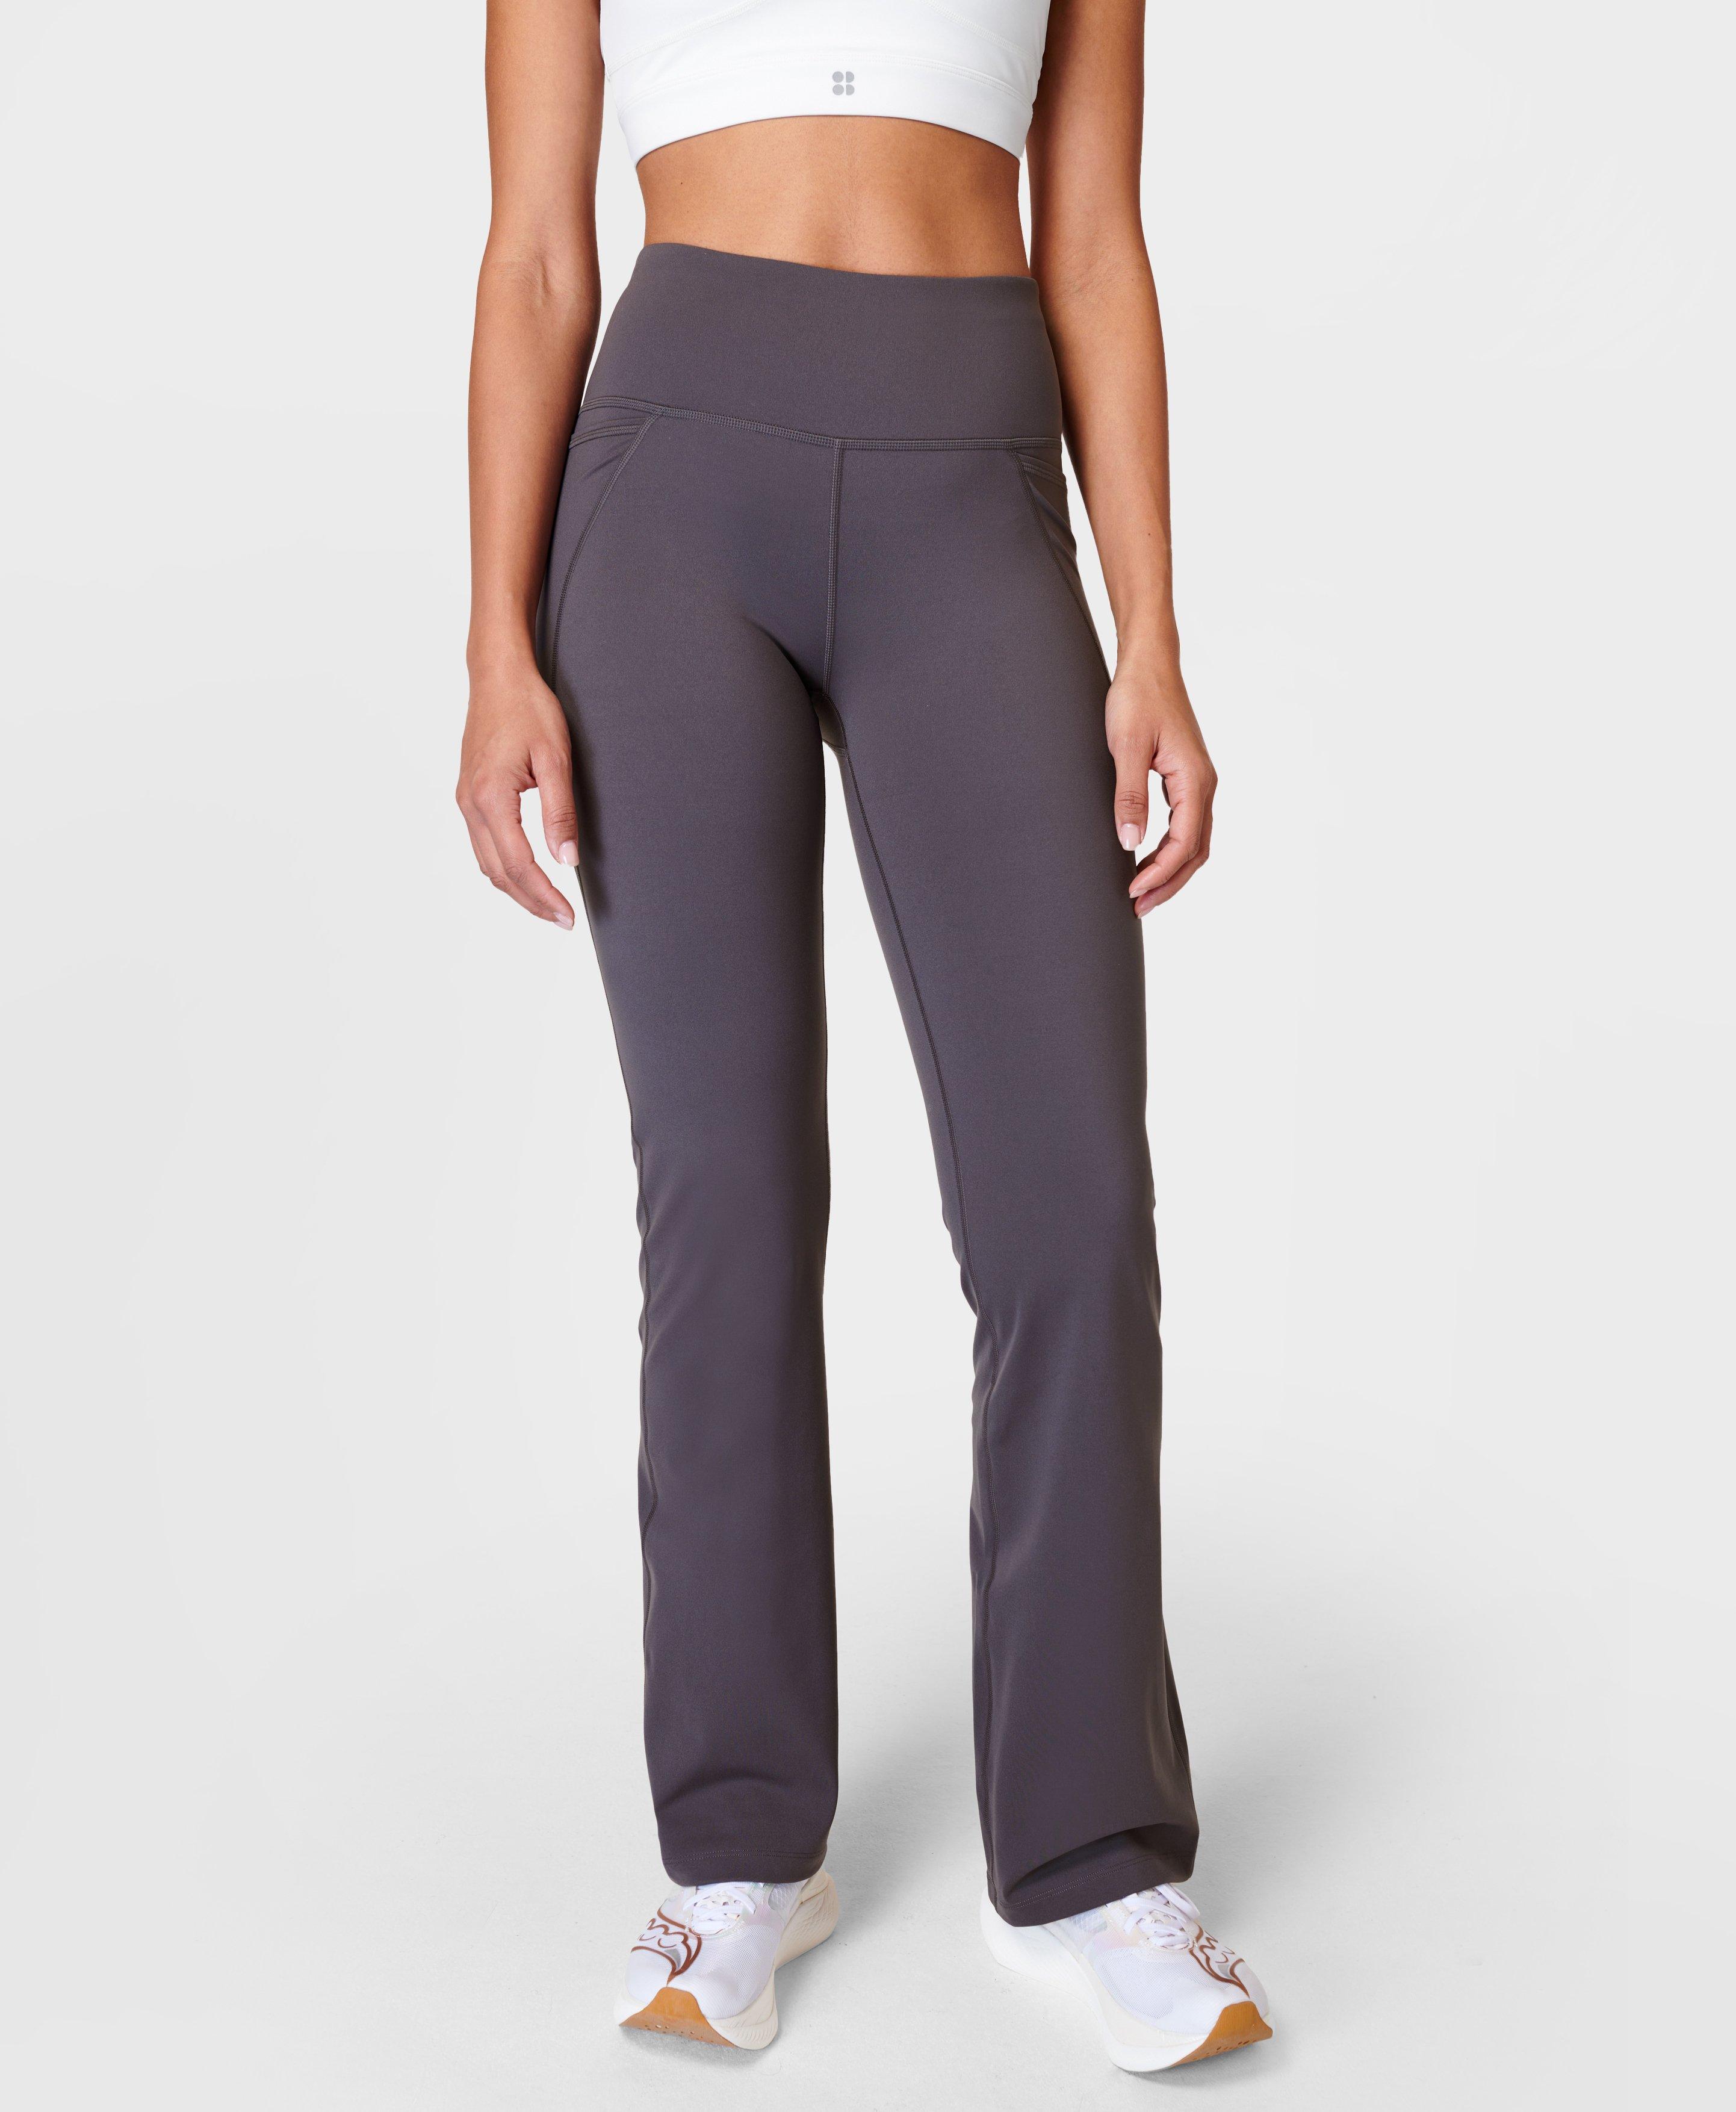 Power Bootcut Workout Pants - Urban Grey, Women's Pants